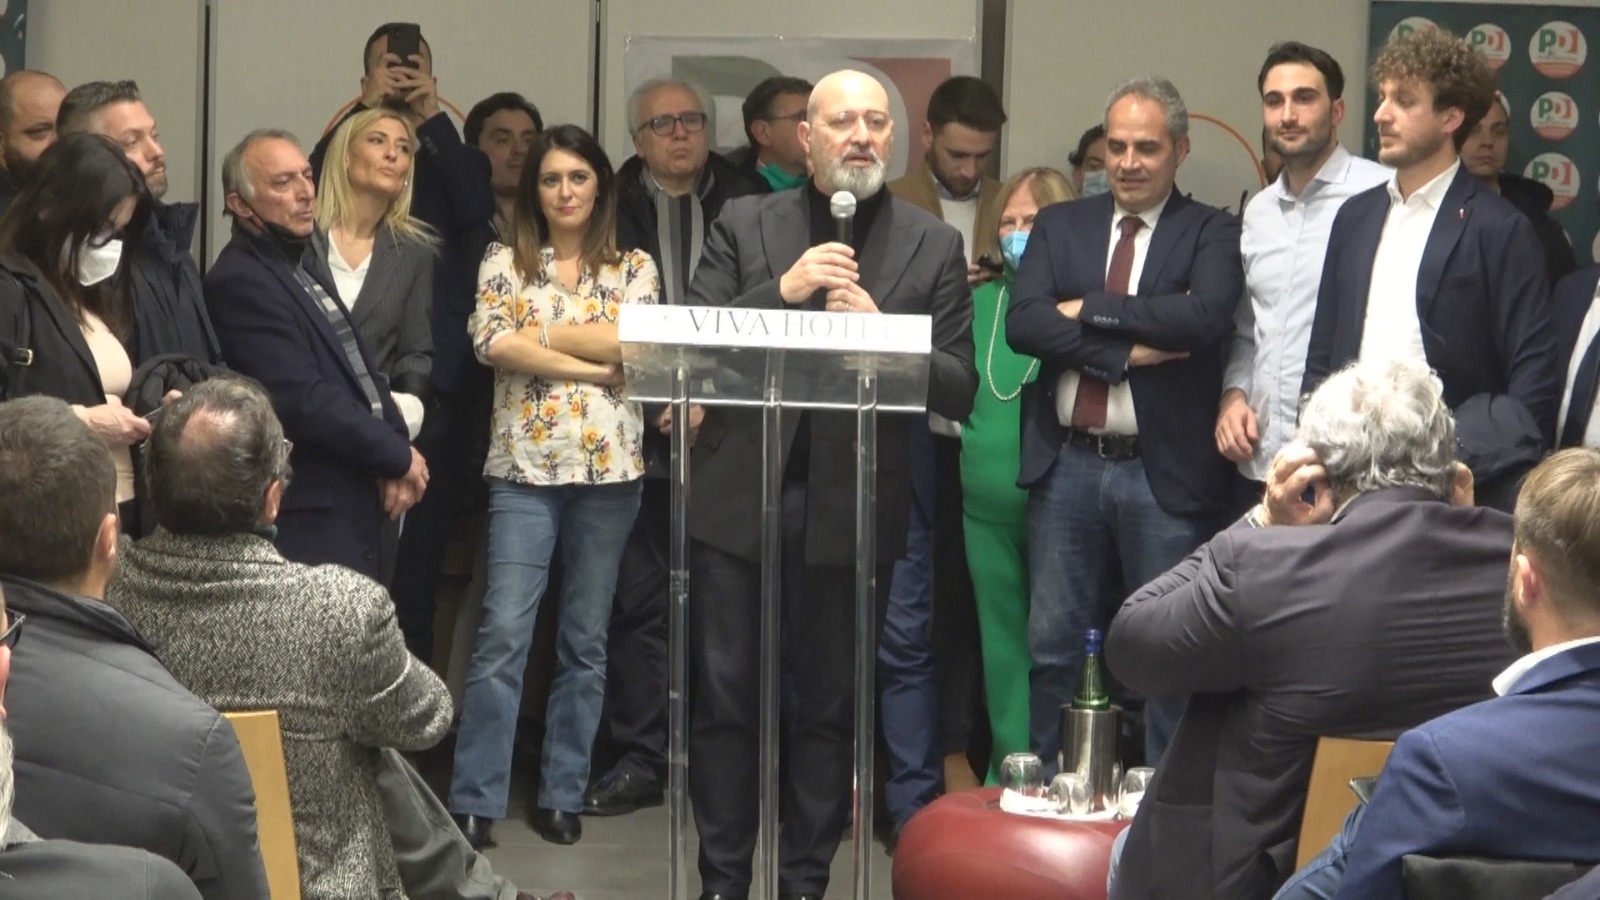 Avellino| Tour per il Nazareno, Bonaccini incontra il Pd irpino: l’autonomia differenziata non spacchi l’Italia